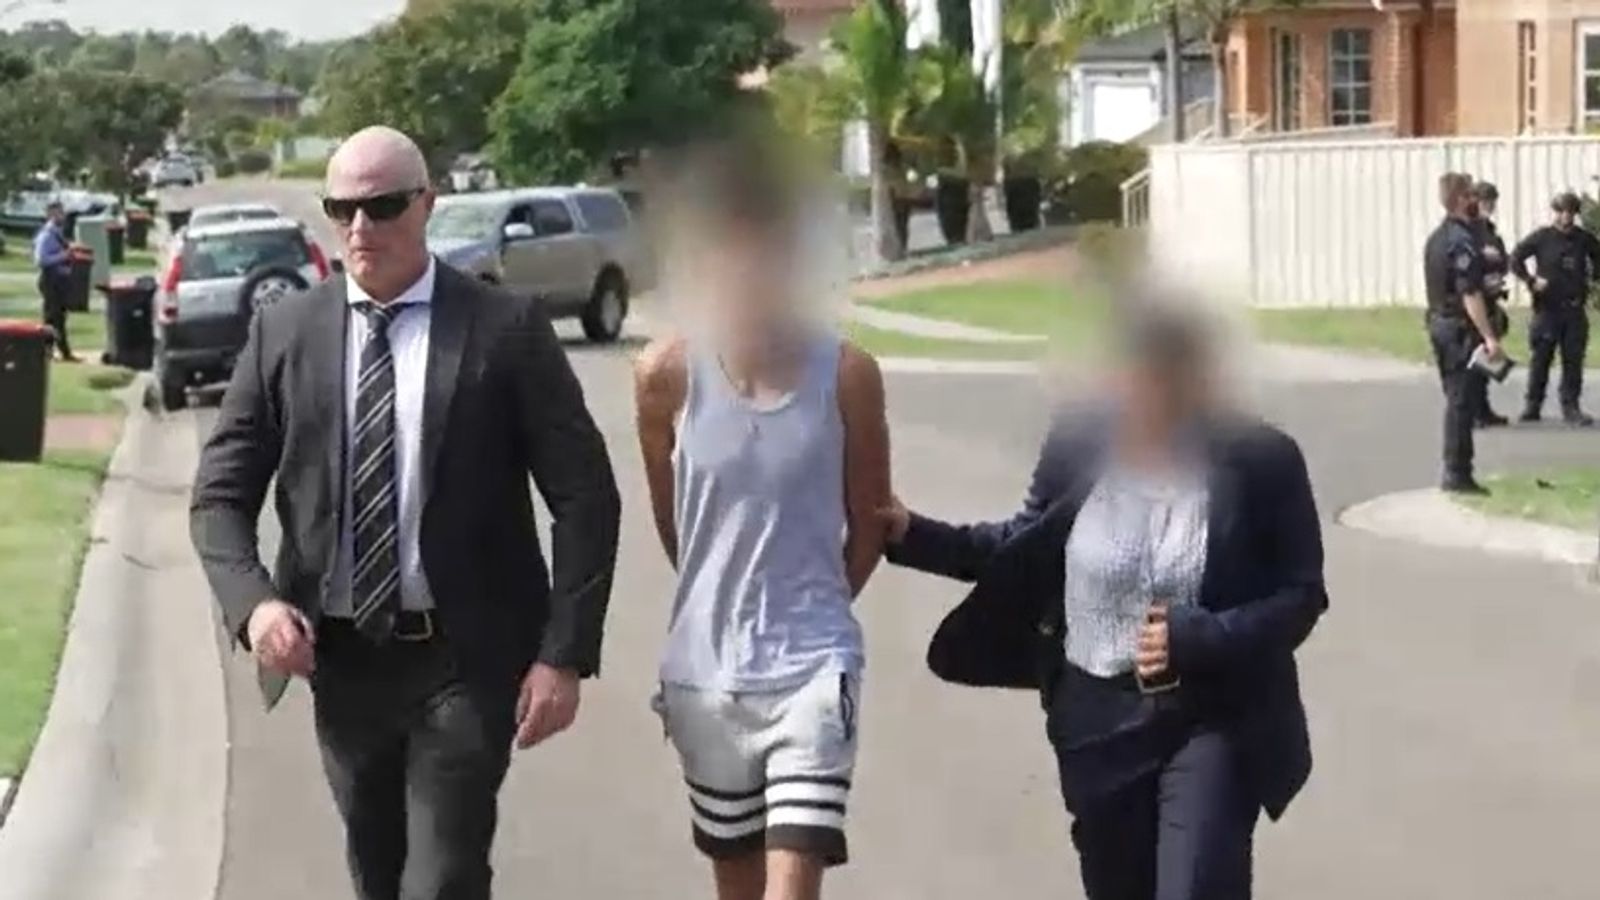 Bei großen Polizeirazzien wurden australische Teenager unter vagen „Terrorismus“-Vorwürfen festgenommen